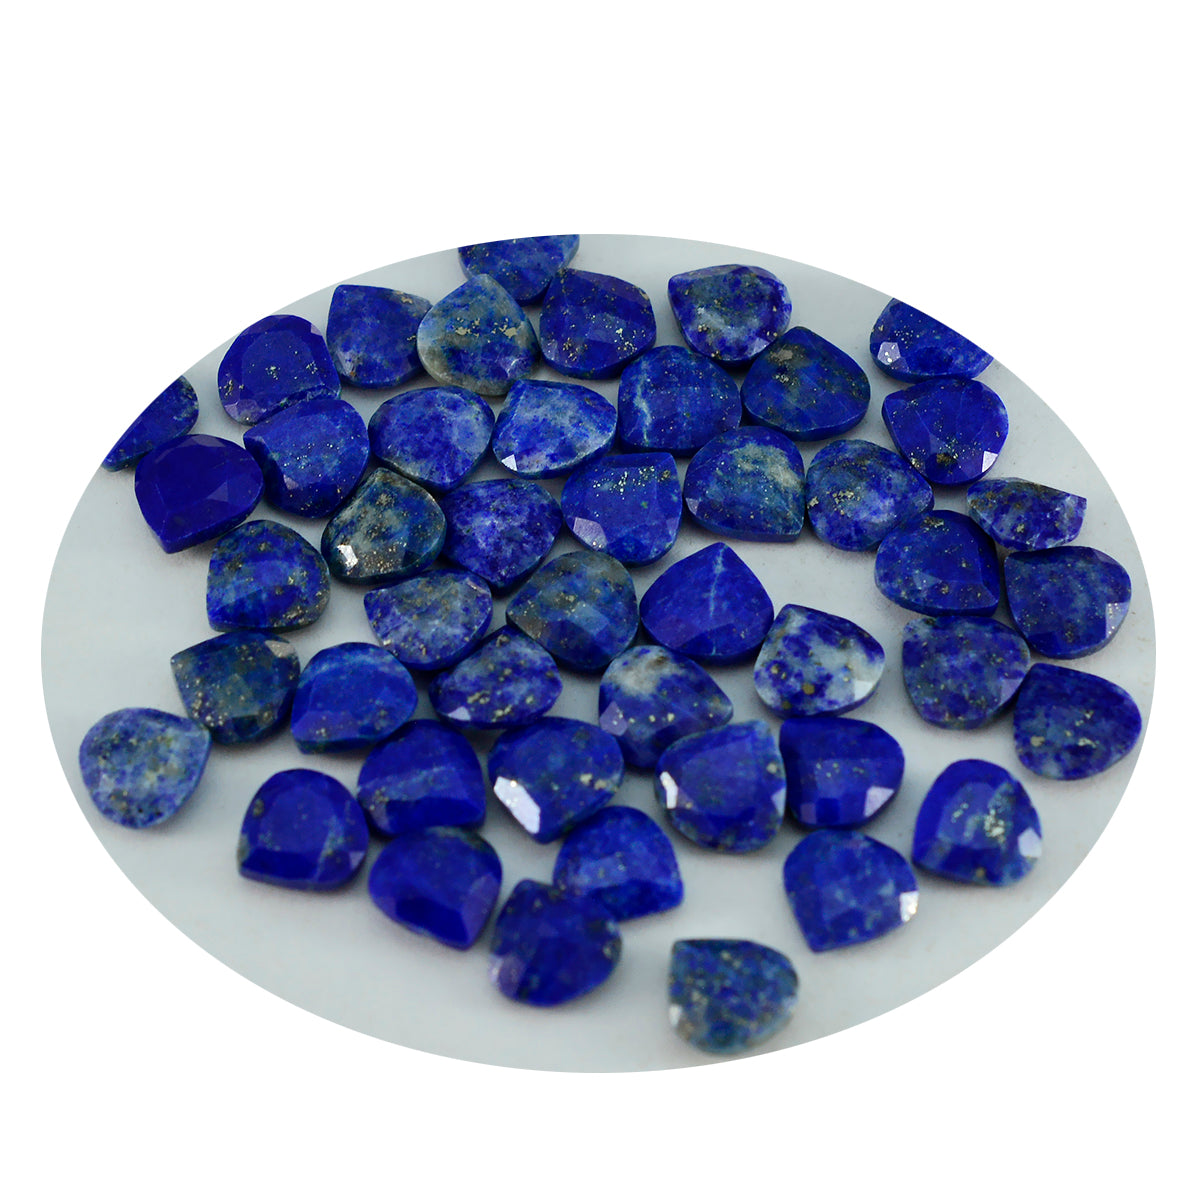 Riyogems 1PC Echte Blauwe Lapis Lazuli Facet 7x7 mm Hartvorm fantastische Kwaliteit Losse Edelstenen